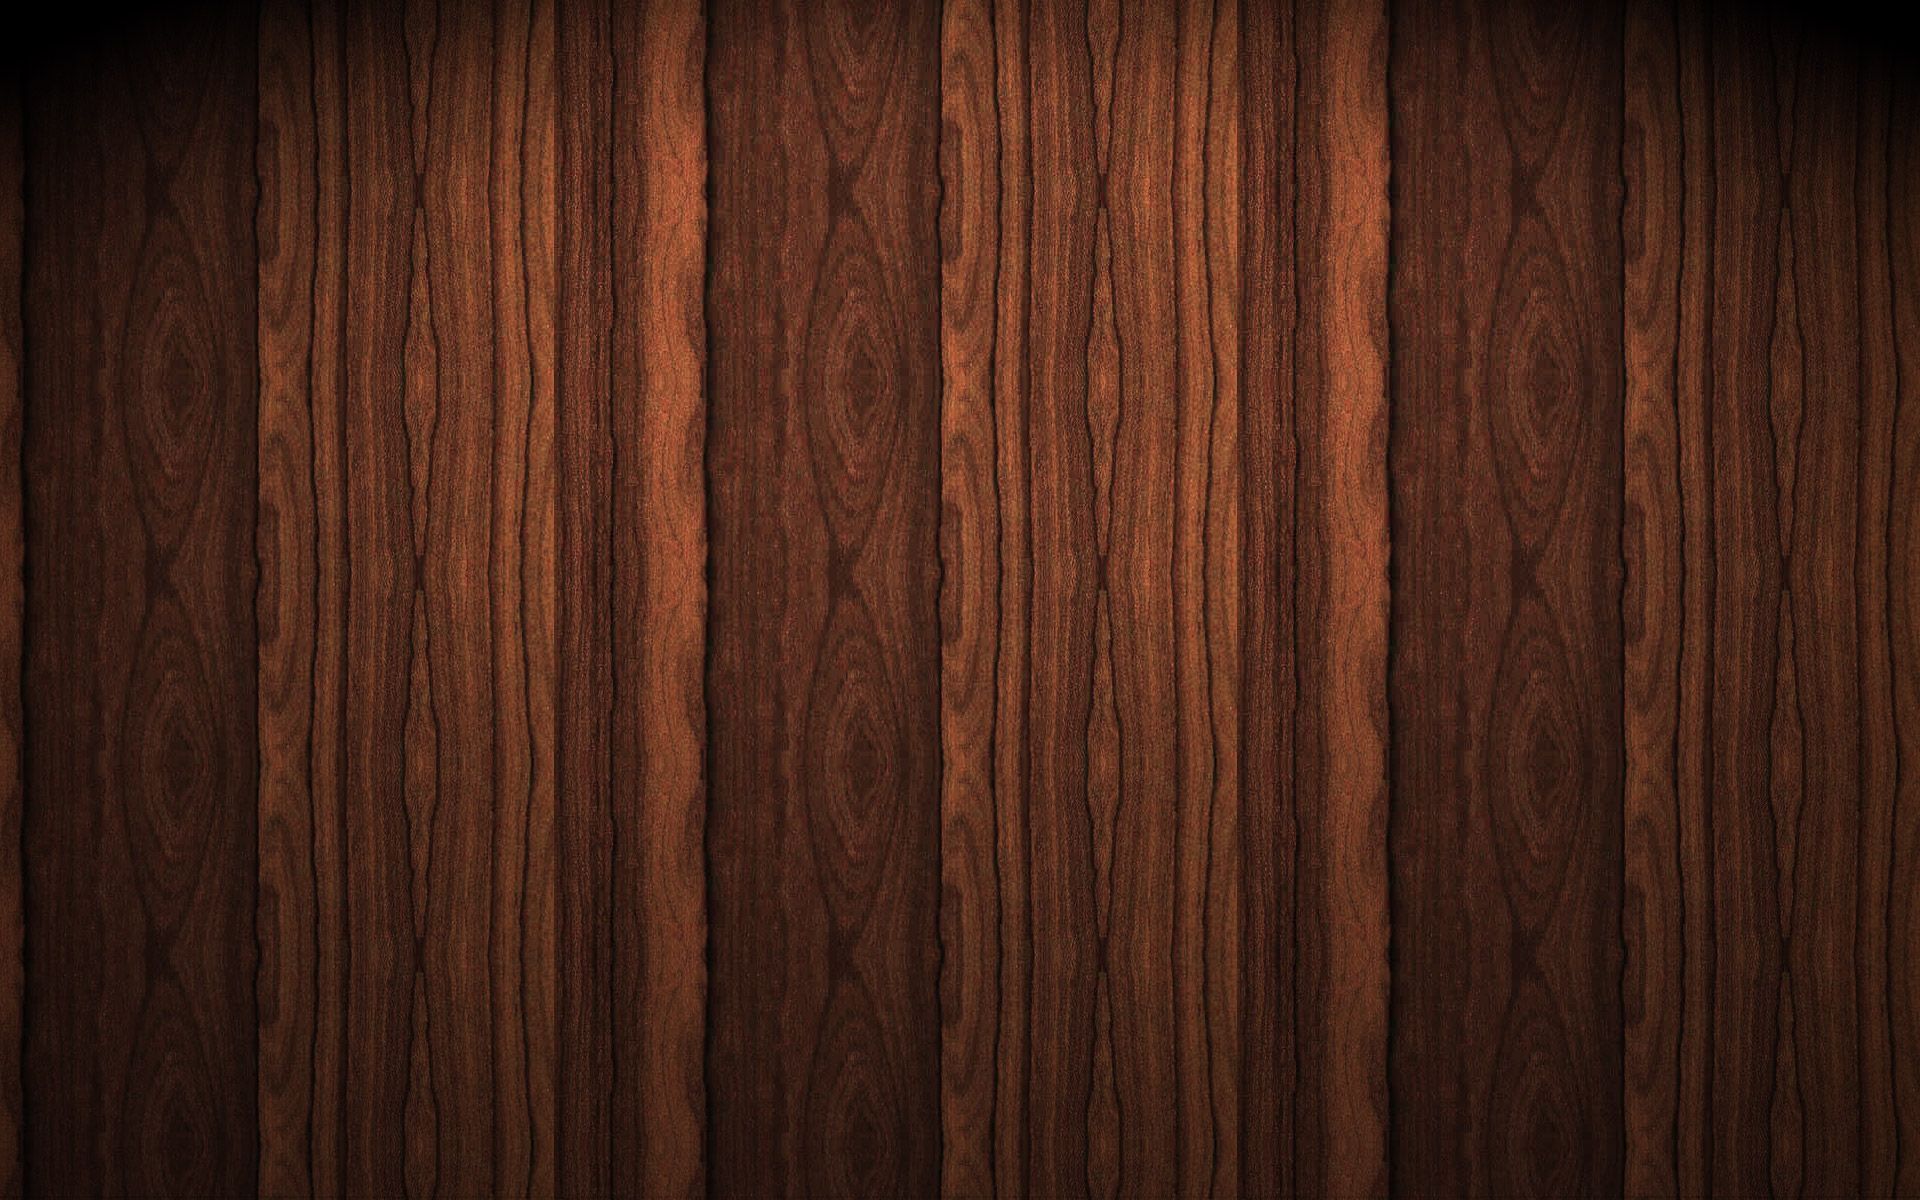 Wood Texture Large Image Dark